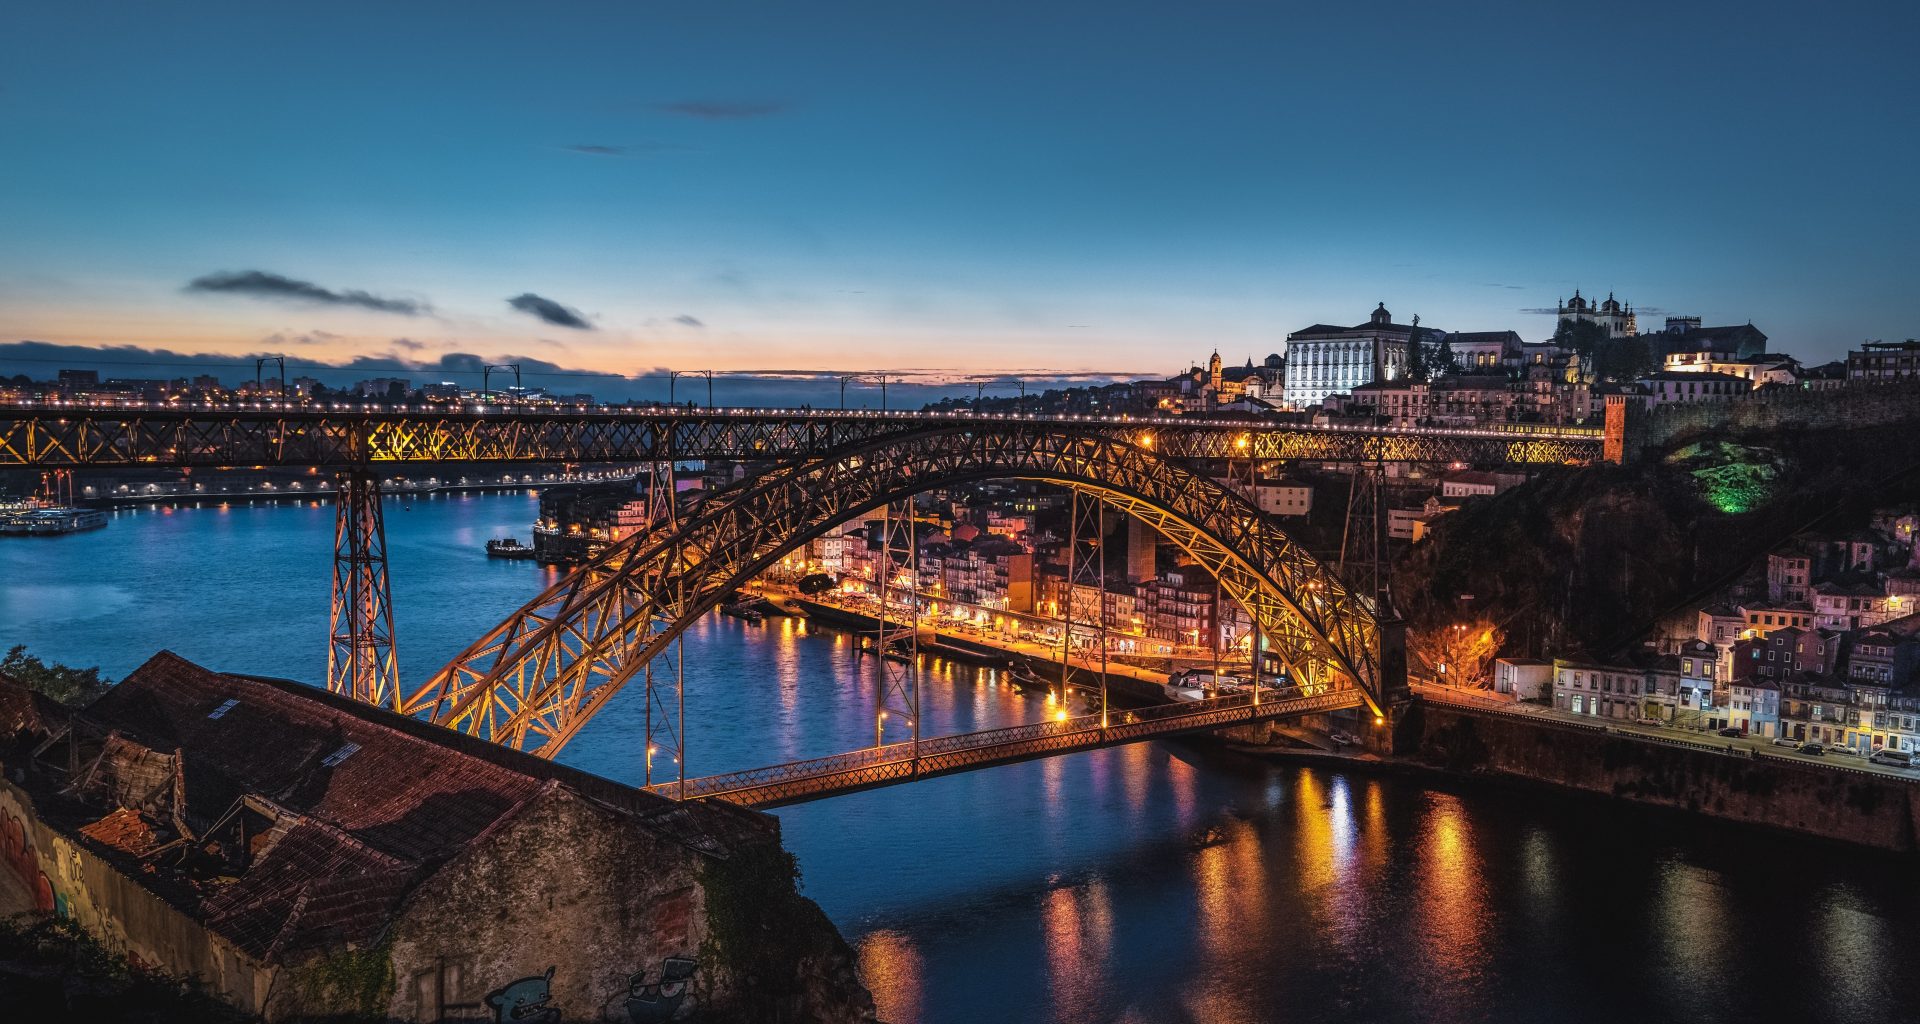 The portuguese bridge at dusk in Porto, Portugal.